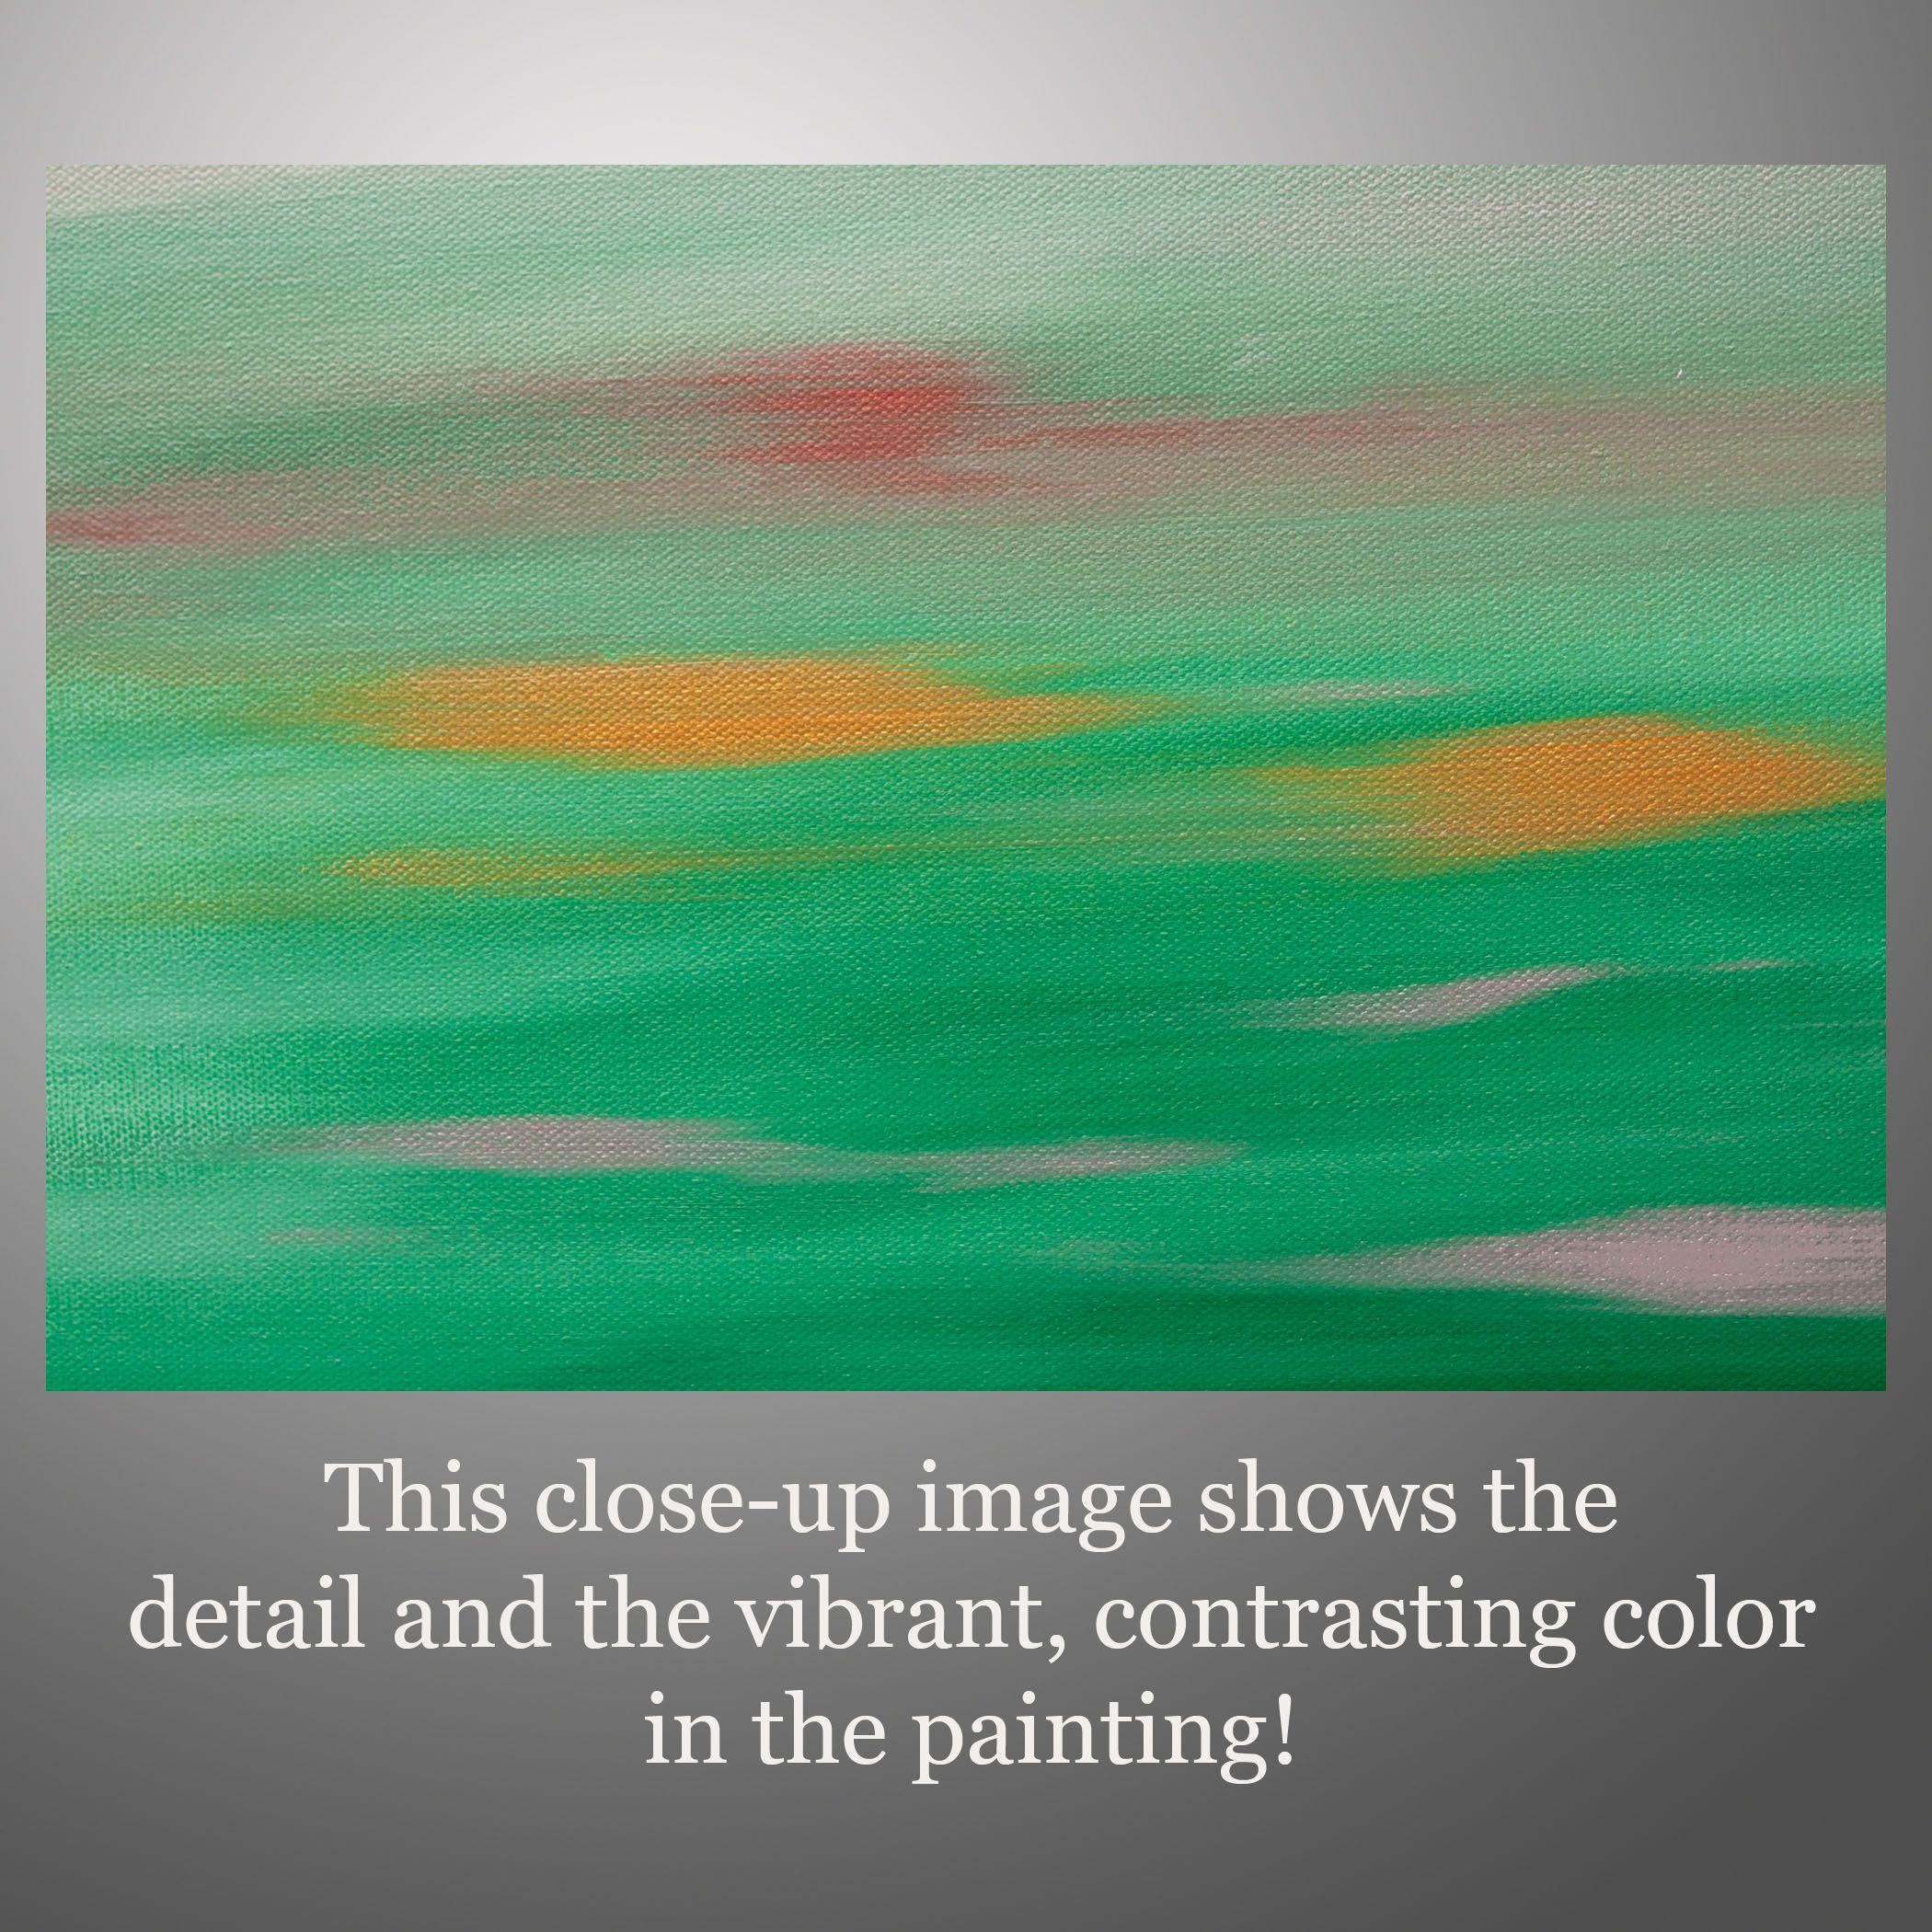 Sunset 68 est une peinture originale, créée avec de la peinture acrylique sur une toile emballée pour la galerie. Il a une largeur de 20 pouces, une hauteur de 20 pouces et une profondeur de 1,5 pouce (20x20x1,5).    Les couleurs utilisées dans le